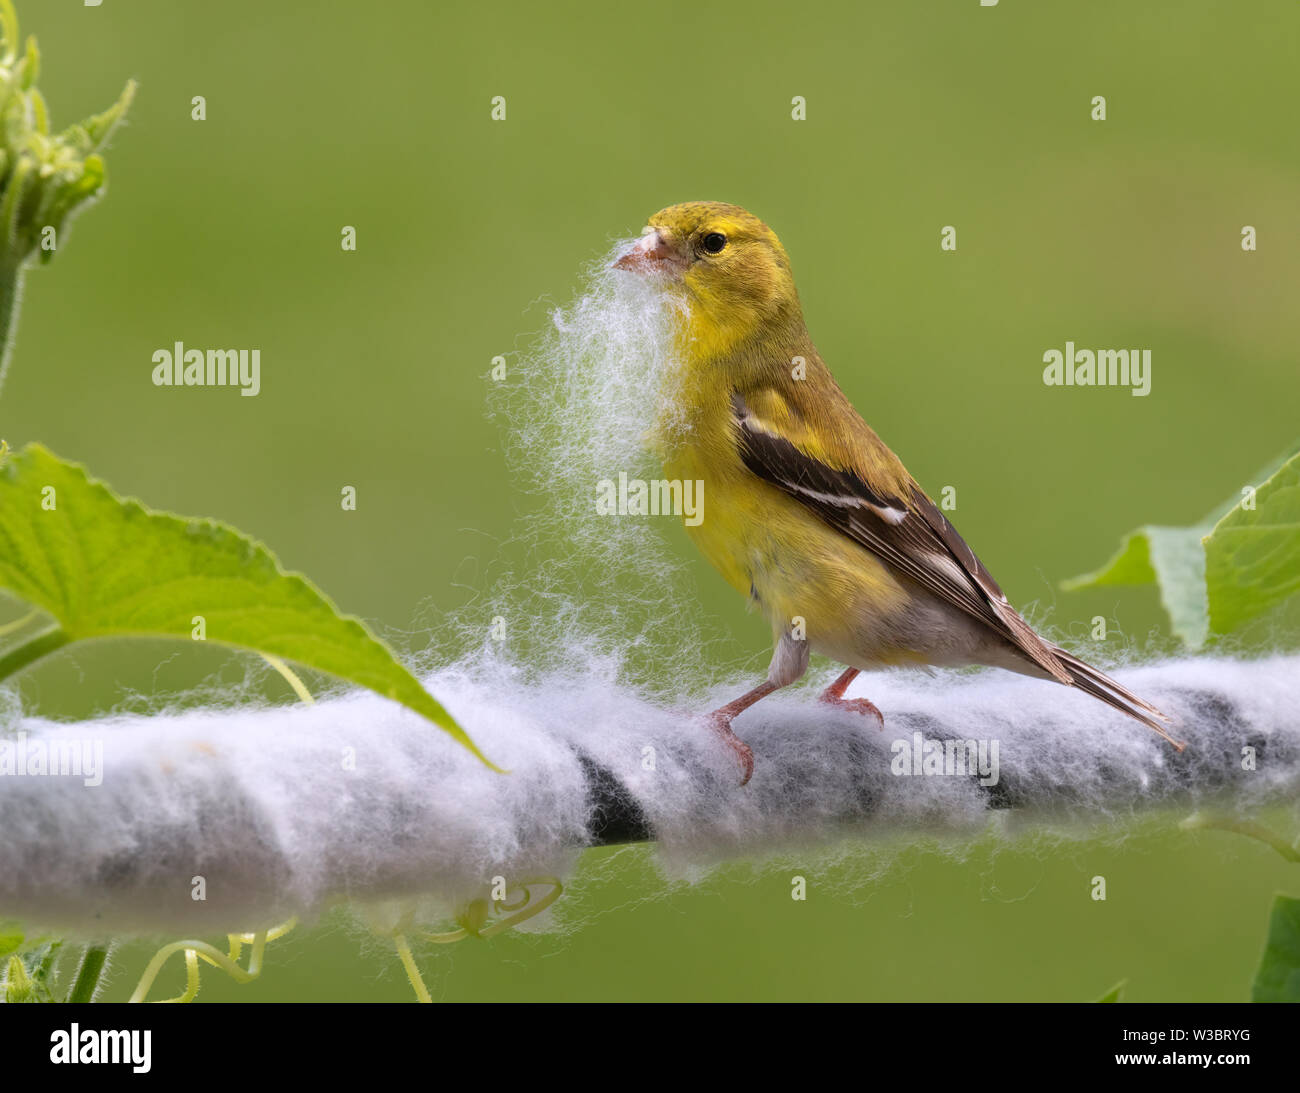 American goldfinch (spinus Tristis) Weiblich, Sammeln von synthetischen Fasern aus isolierten Rohr zur Auskleidung von ihrem Nest, Ames, Iowa, USA Stockfoto